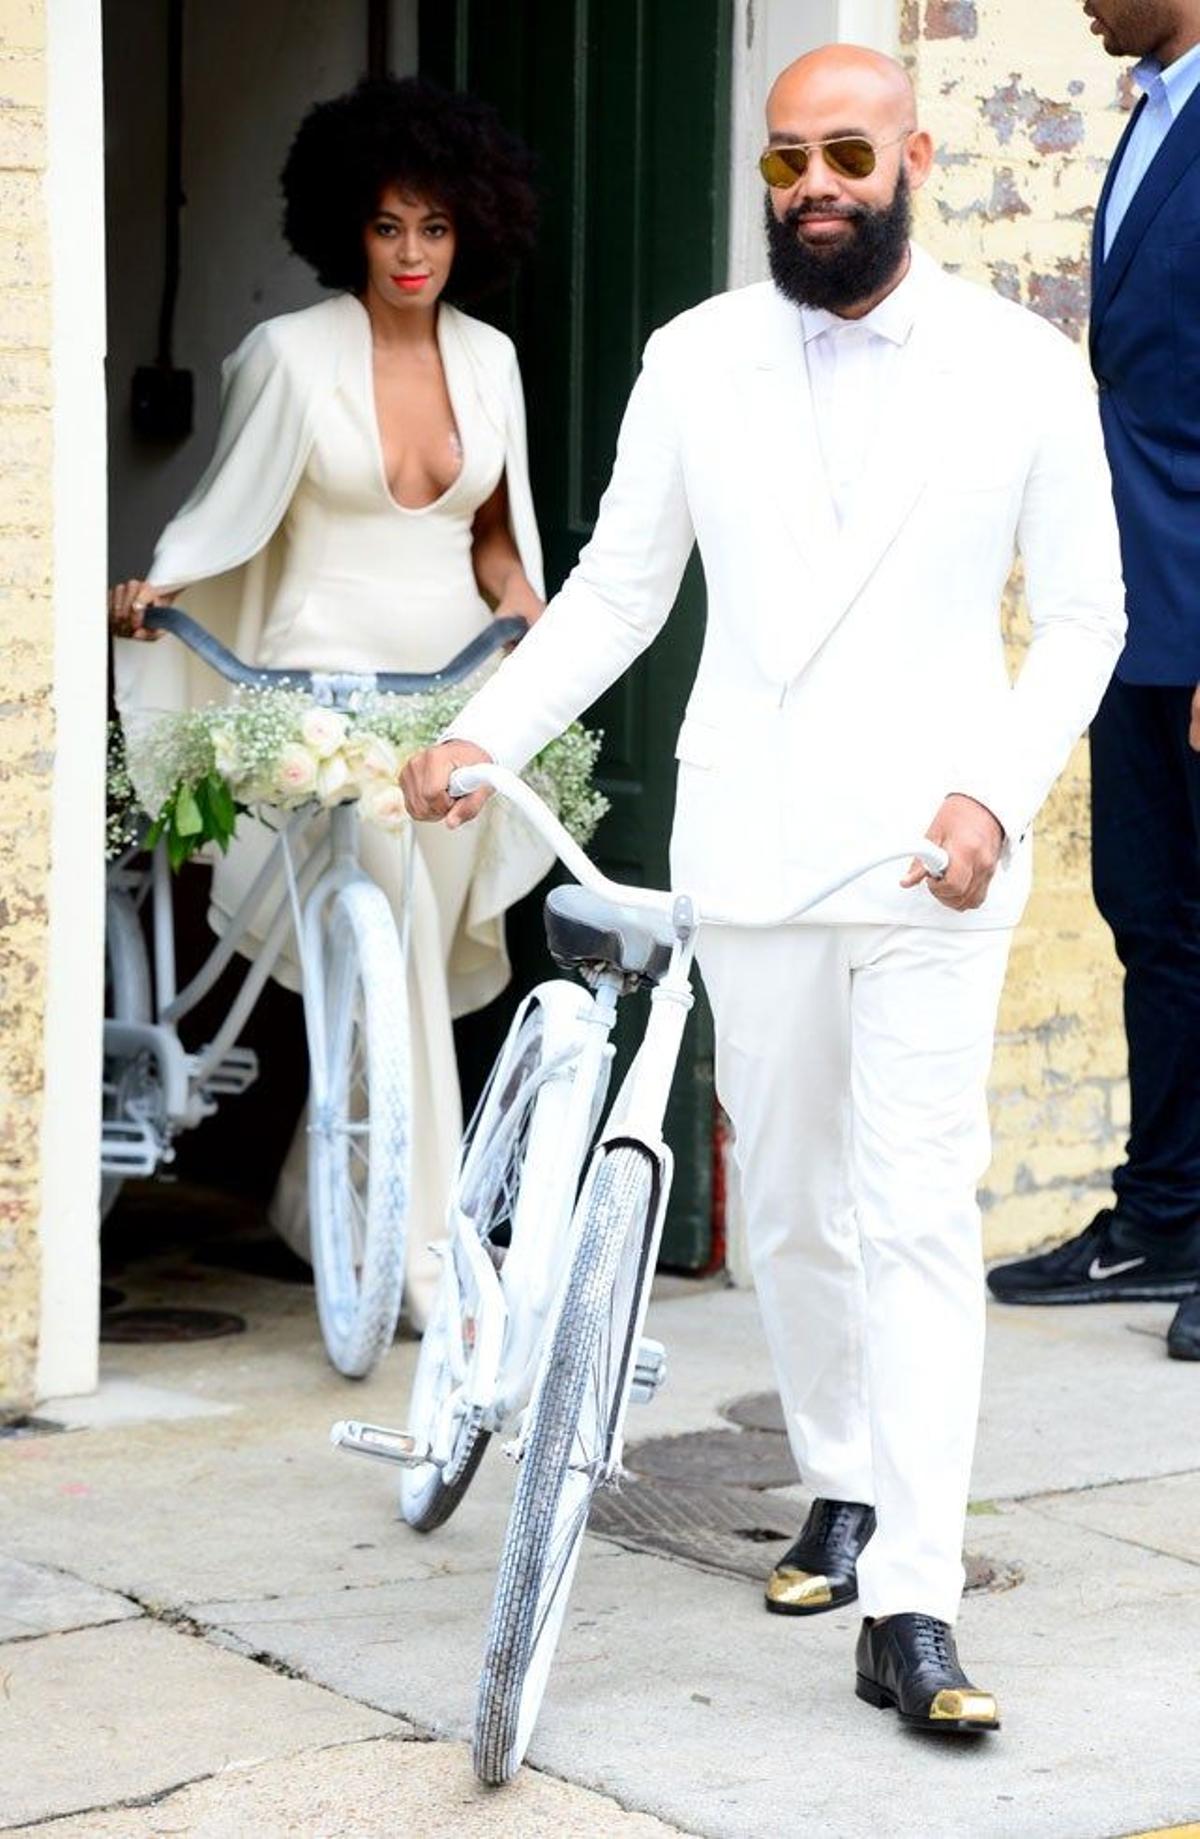 Solange Knowles y Alan Ferguson van en bici a su boda